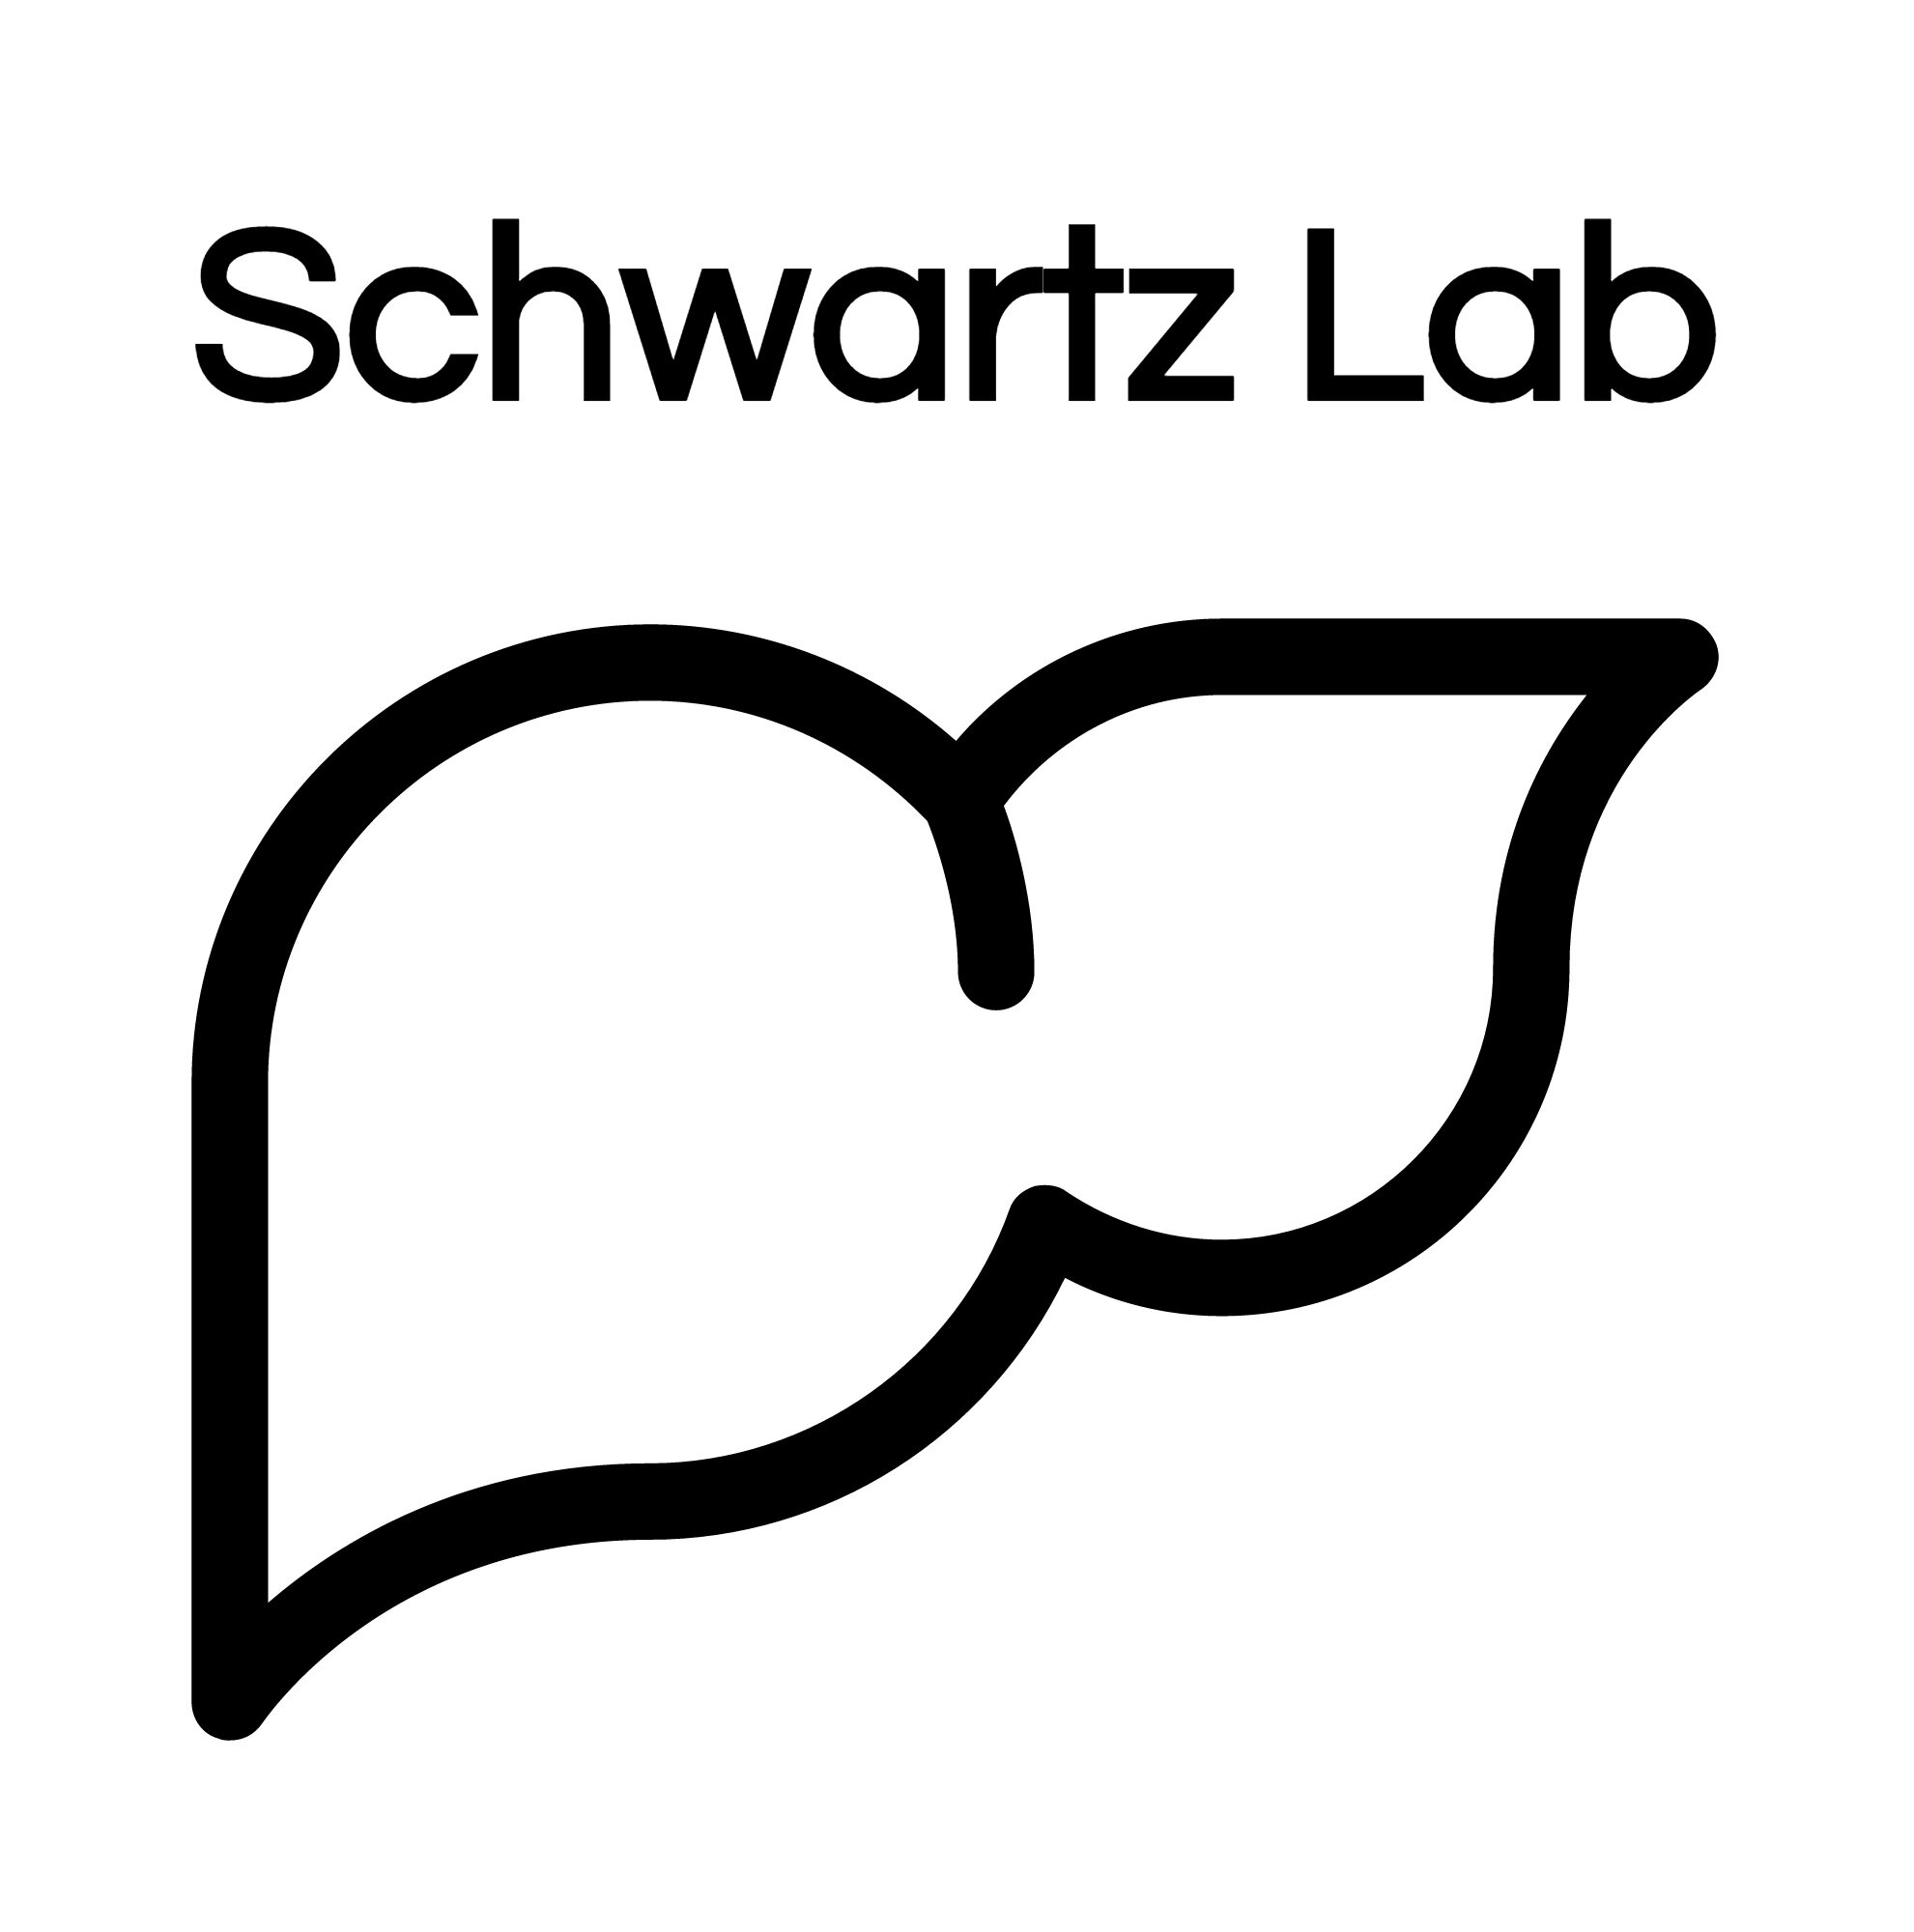 Schwartz Lab